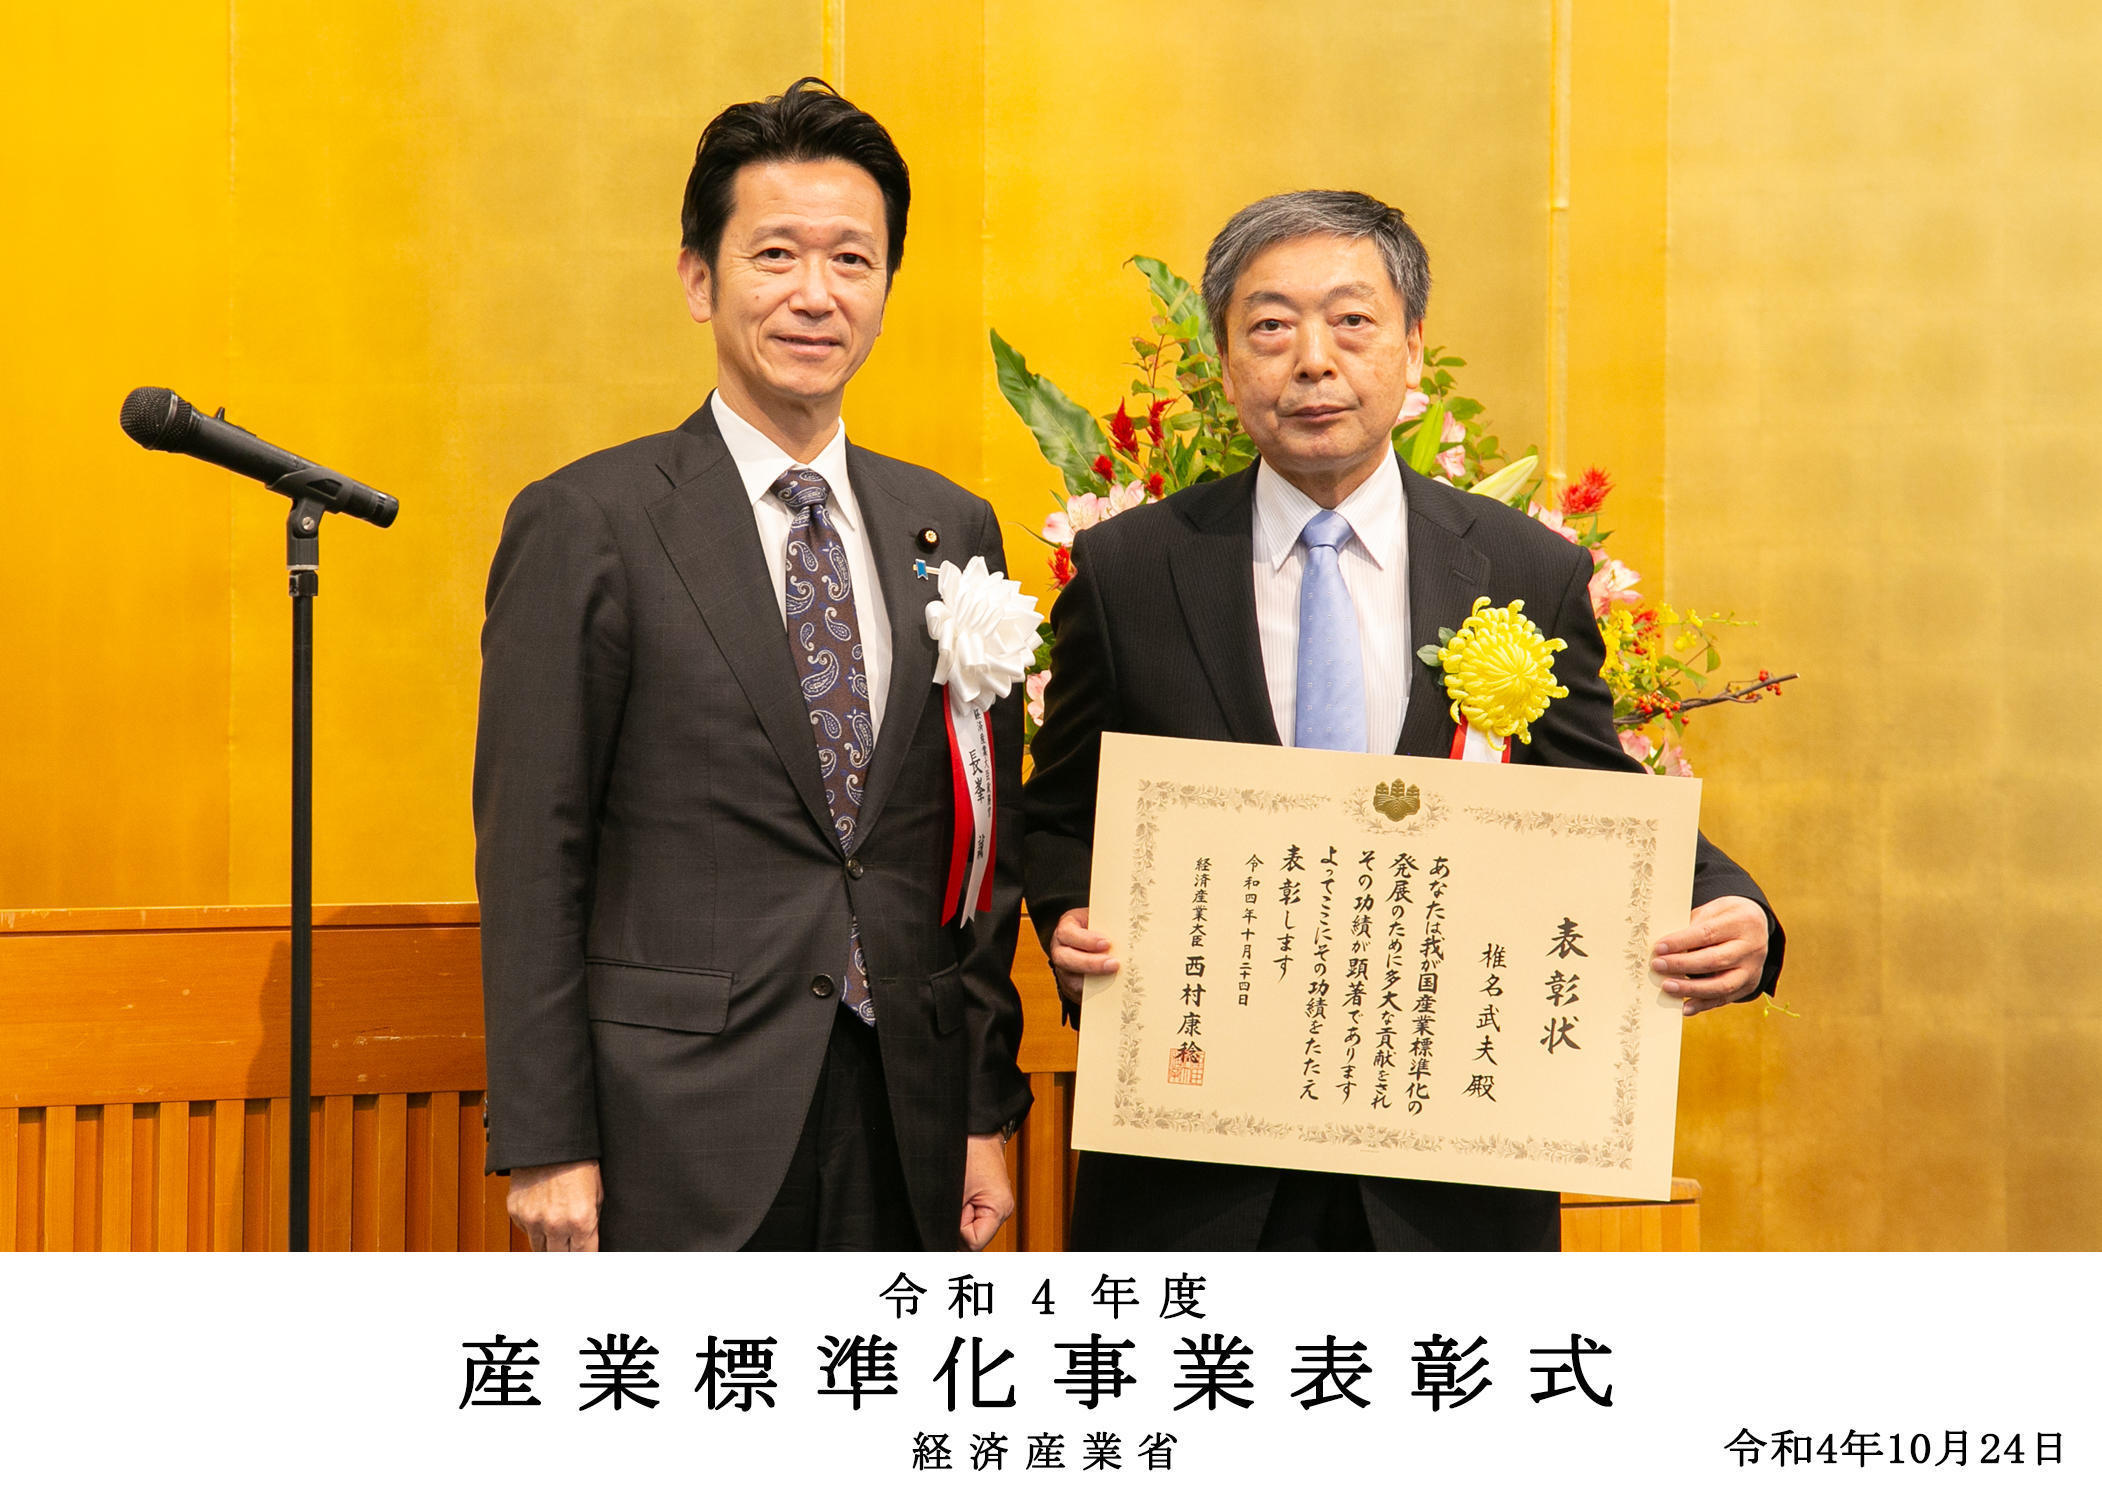 園芸学研究院の椎名武夫教授が「令和４年度産業標準化事業表彰・経済産業大臣表彰」を受賞しました。